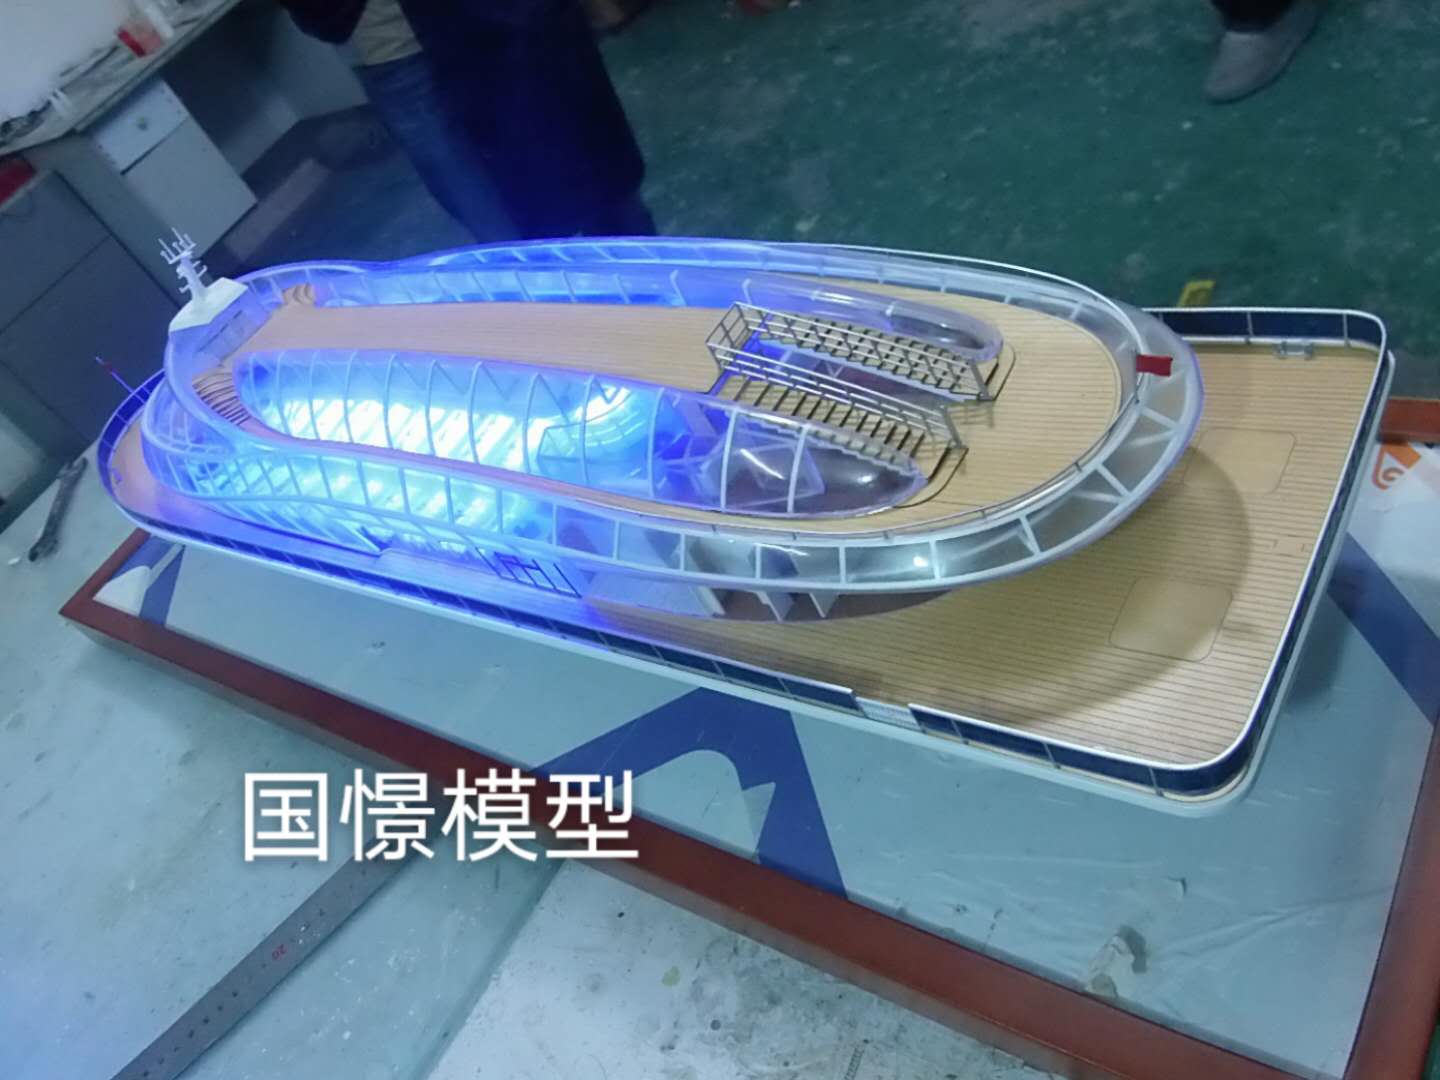 红安县船舶模型